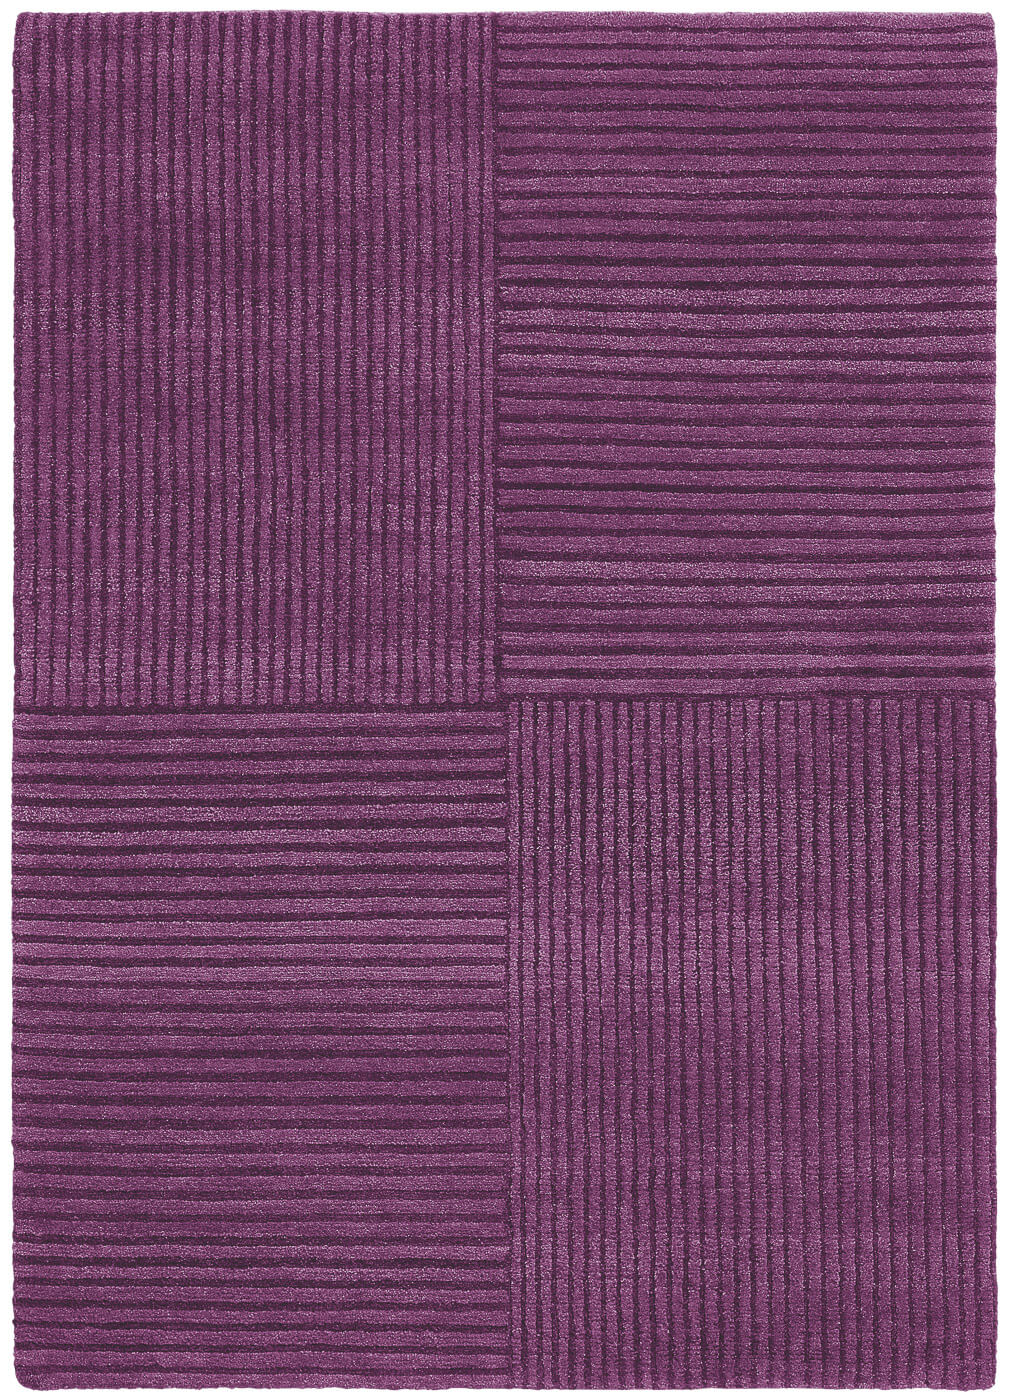 Purple Hand-woven Luxury Rug ☞ Size: 250 x 300 cm